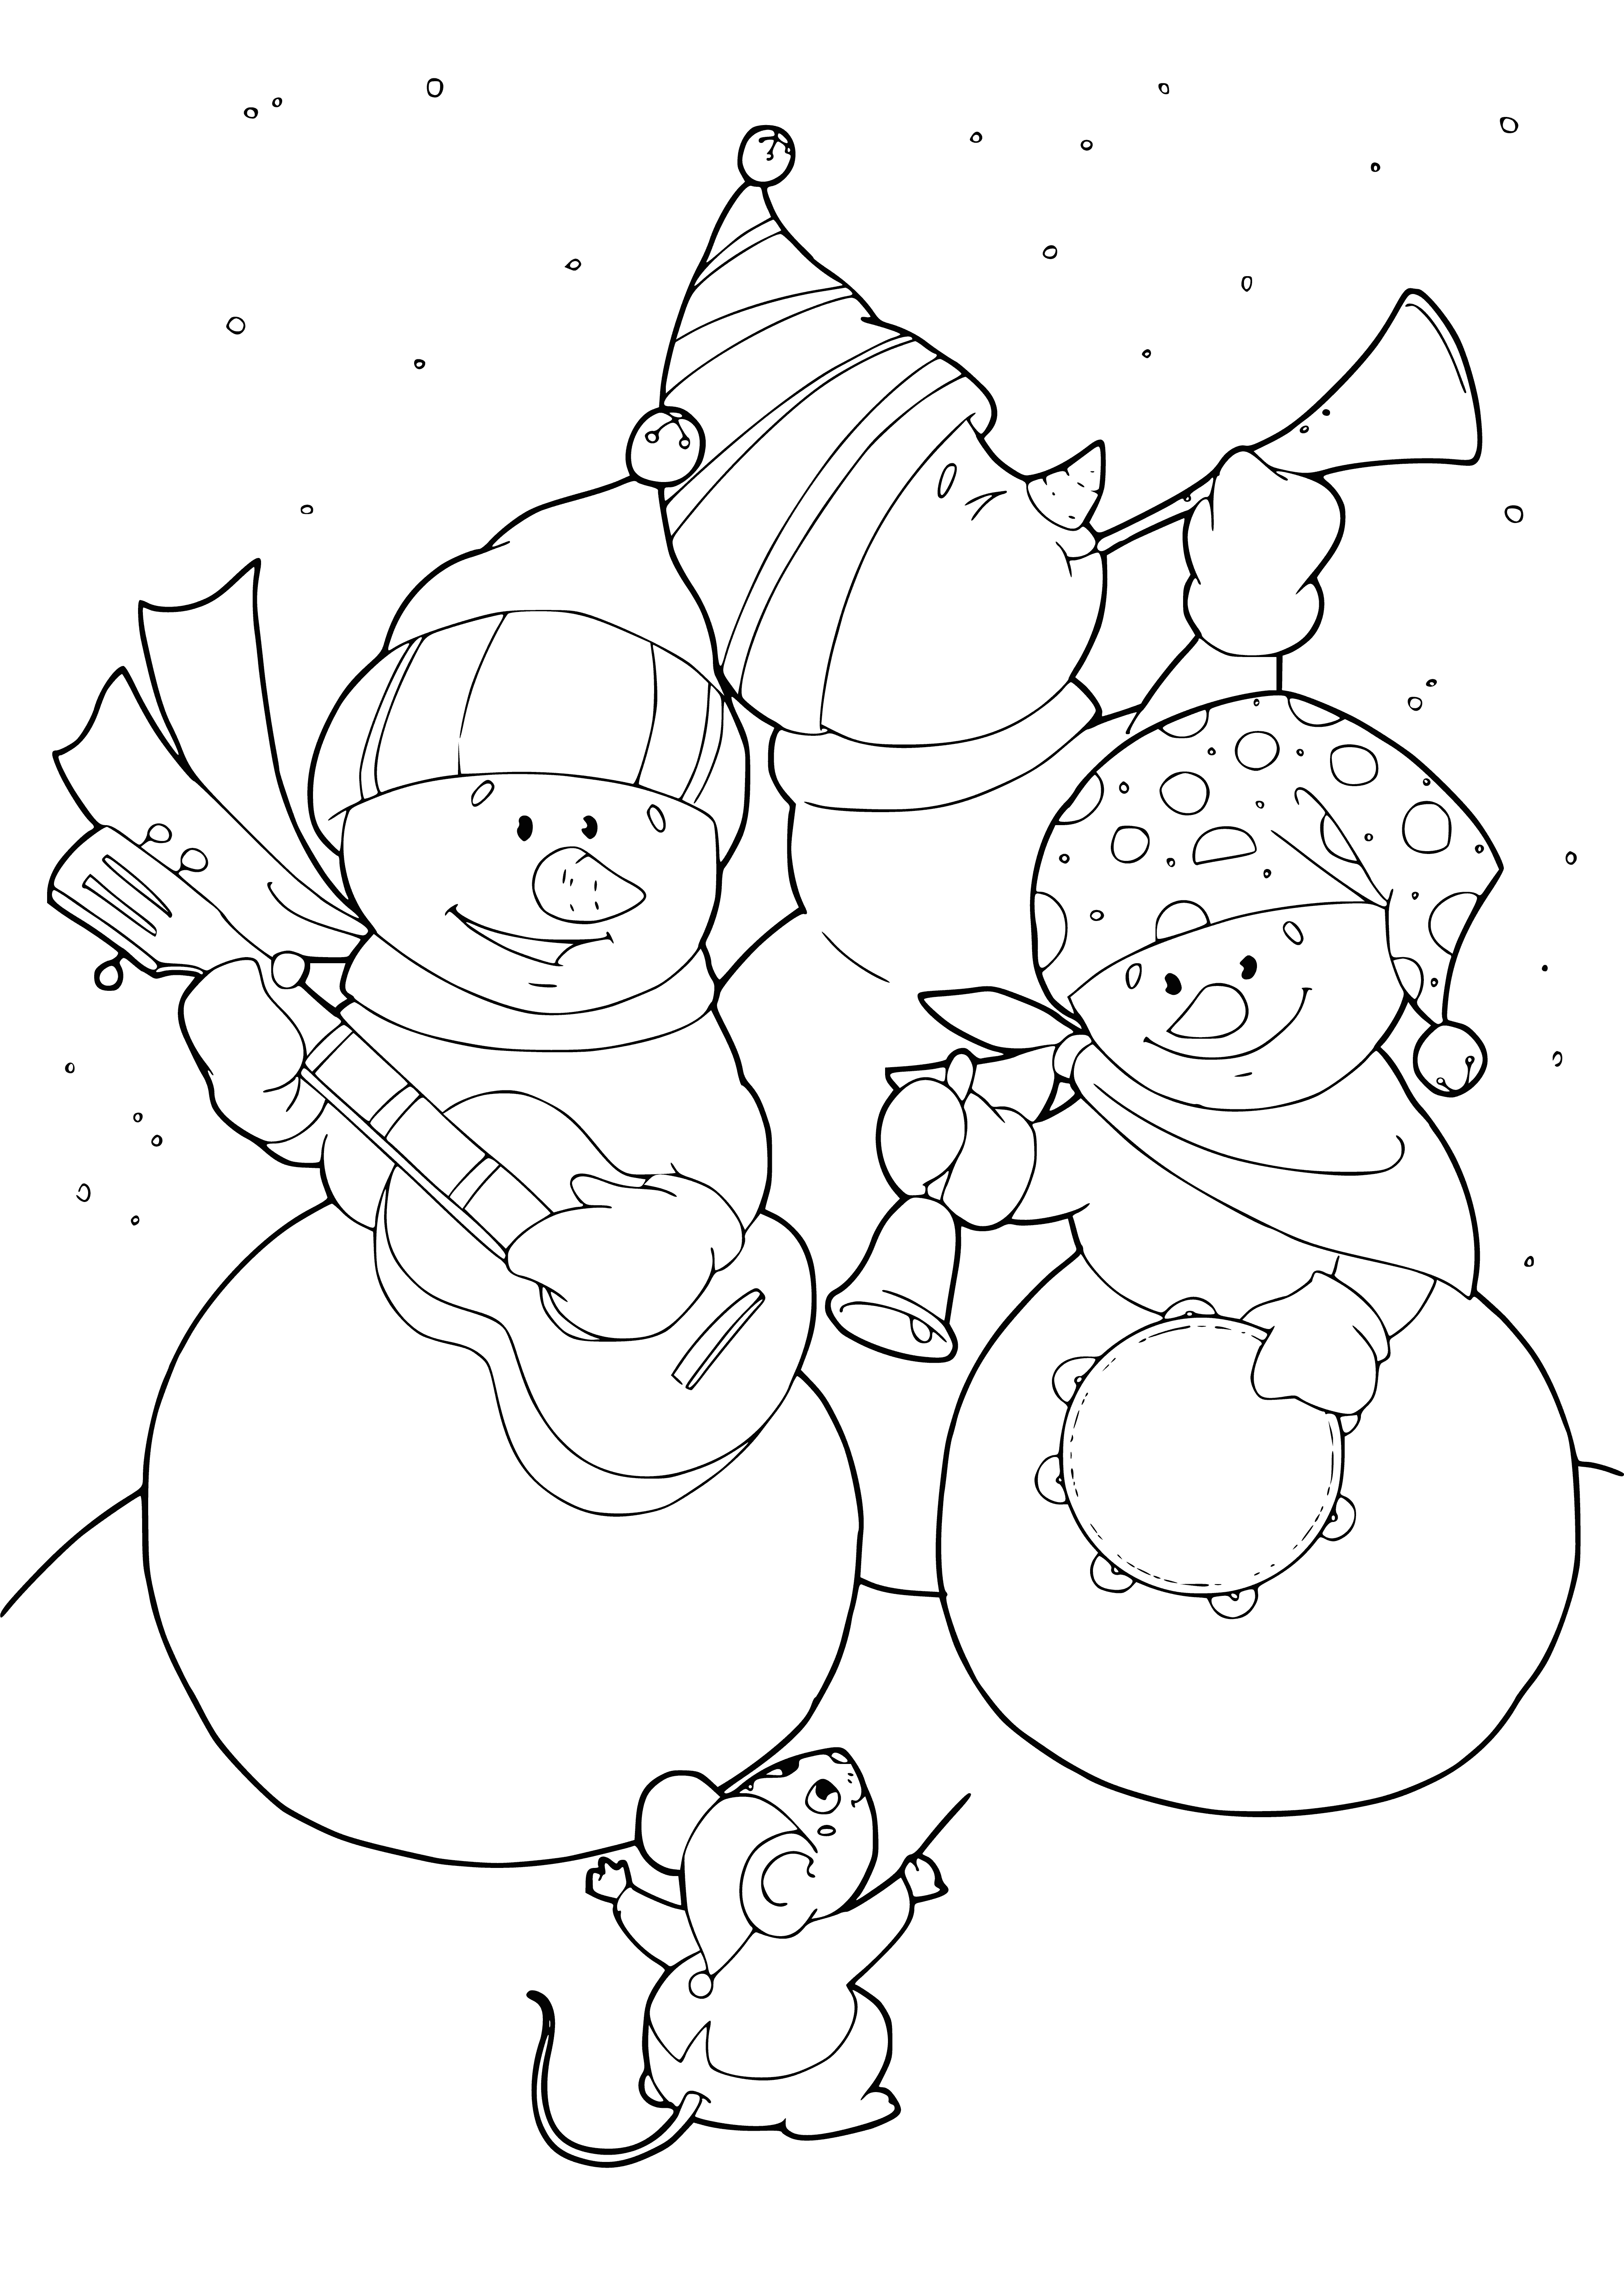 Раскраска Снеговик и мышка